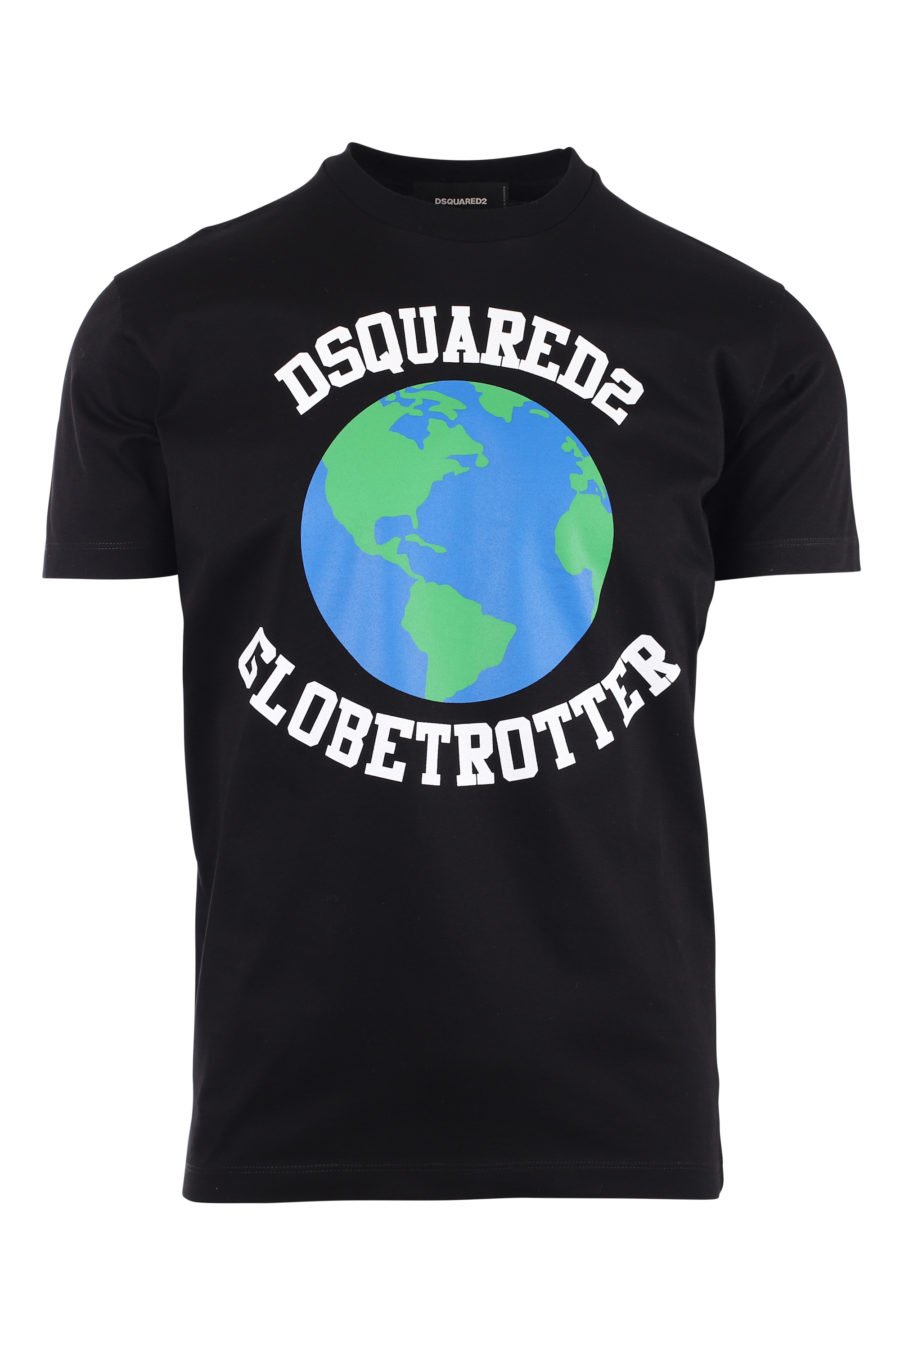 Schwarzes T-Shirt mit Planetenlogo "Globetrotter" - IMG 9724